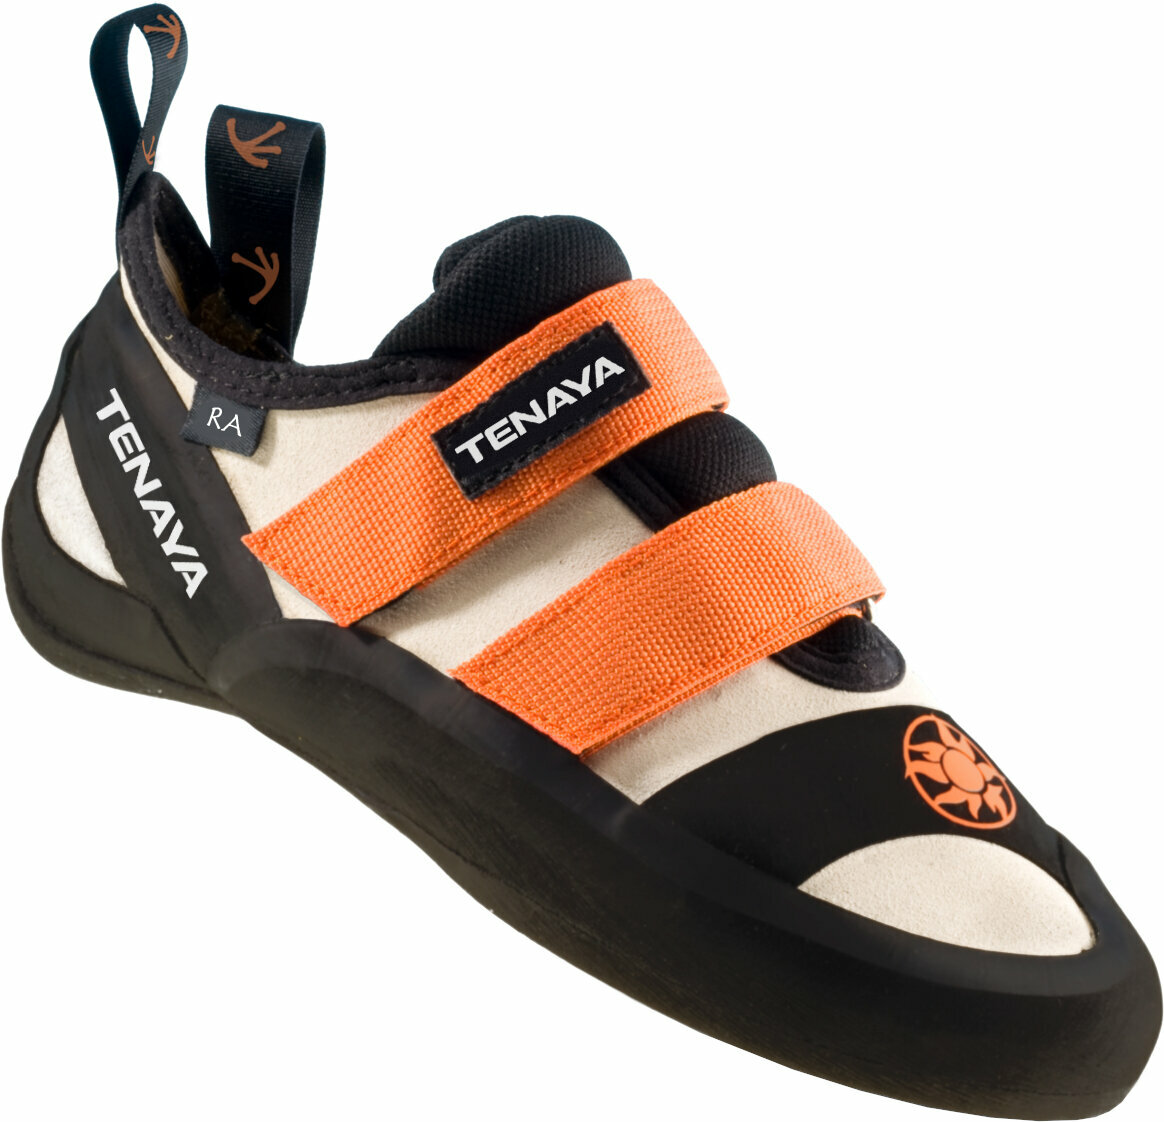 Scarpe da arrampicata Tenaya Ra Orange 44,5 Scarpe da arrampicata